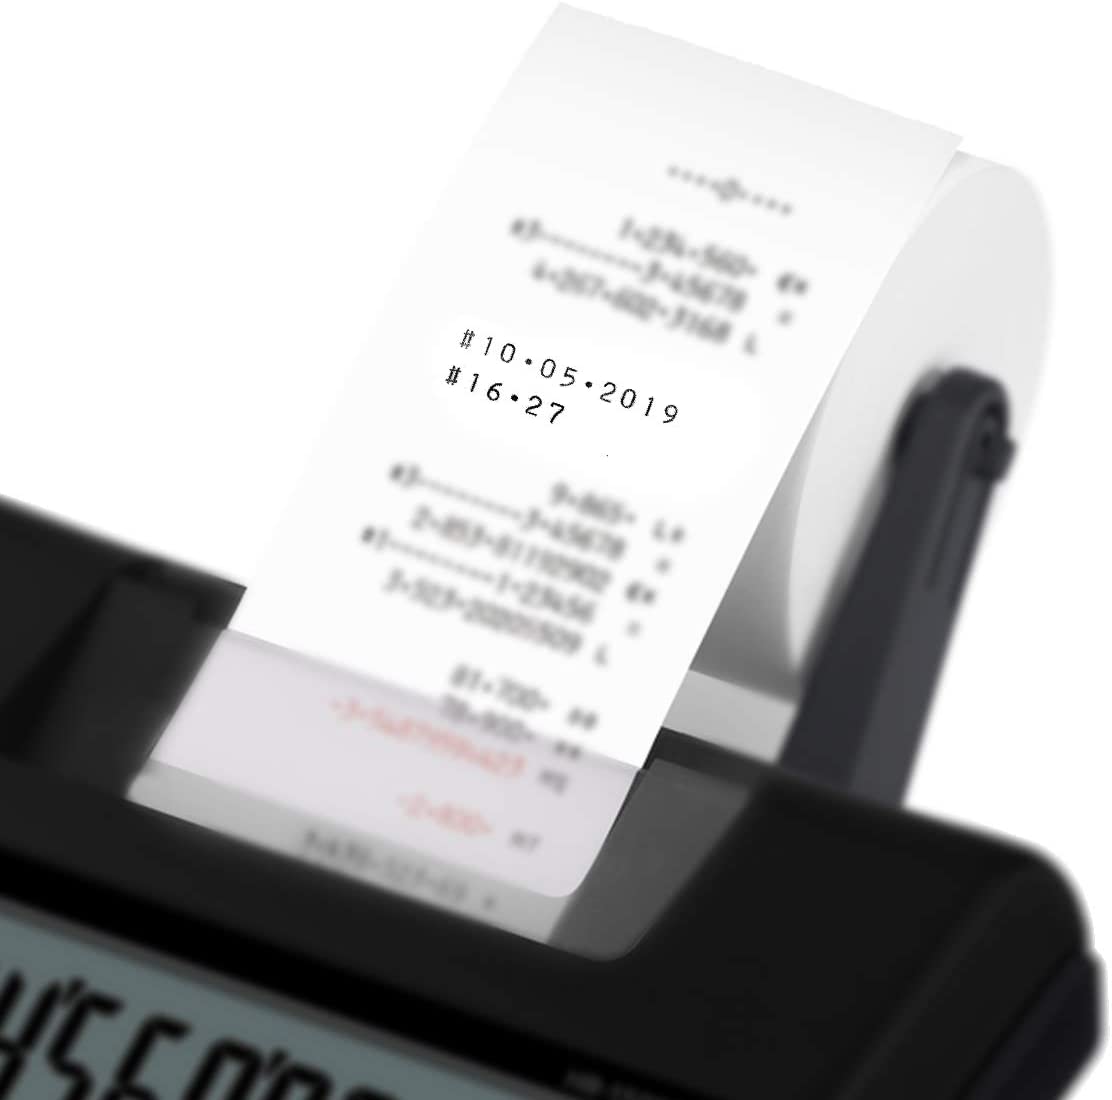 Calculatrice d'imprimante de bureau Casio HR150RCE - Affichage à 12 chiffres - Largeur de papier de 58 mm - Imprime l'heure et la date - Alimentée par batterie